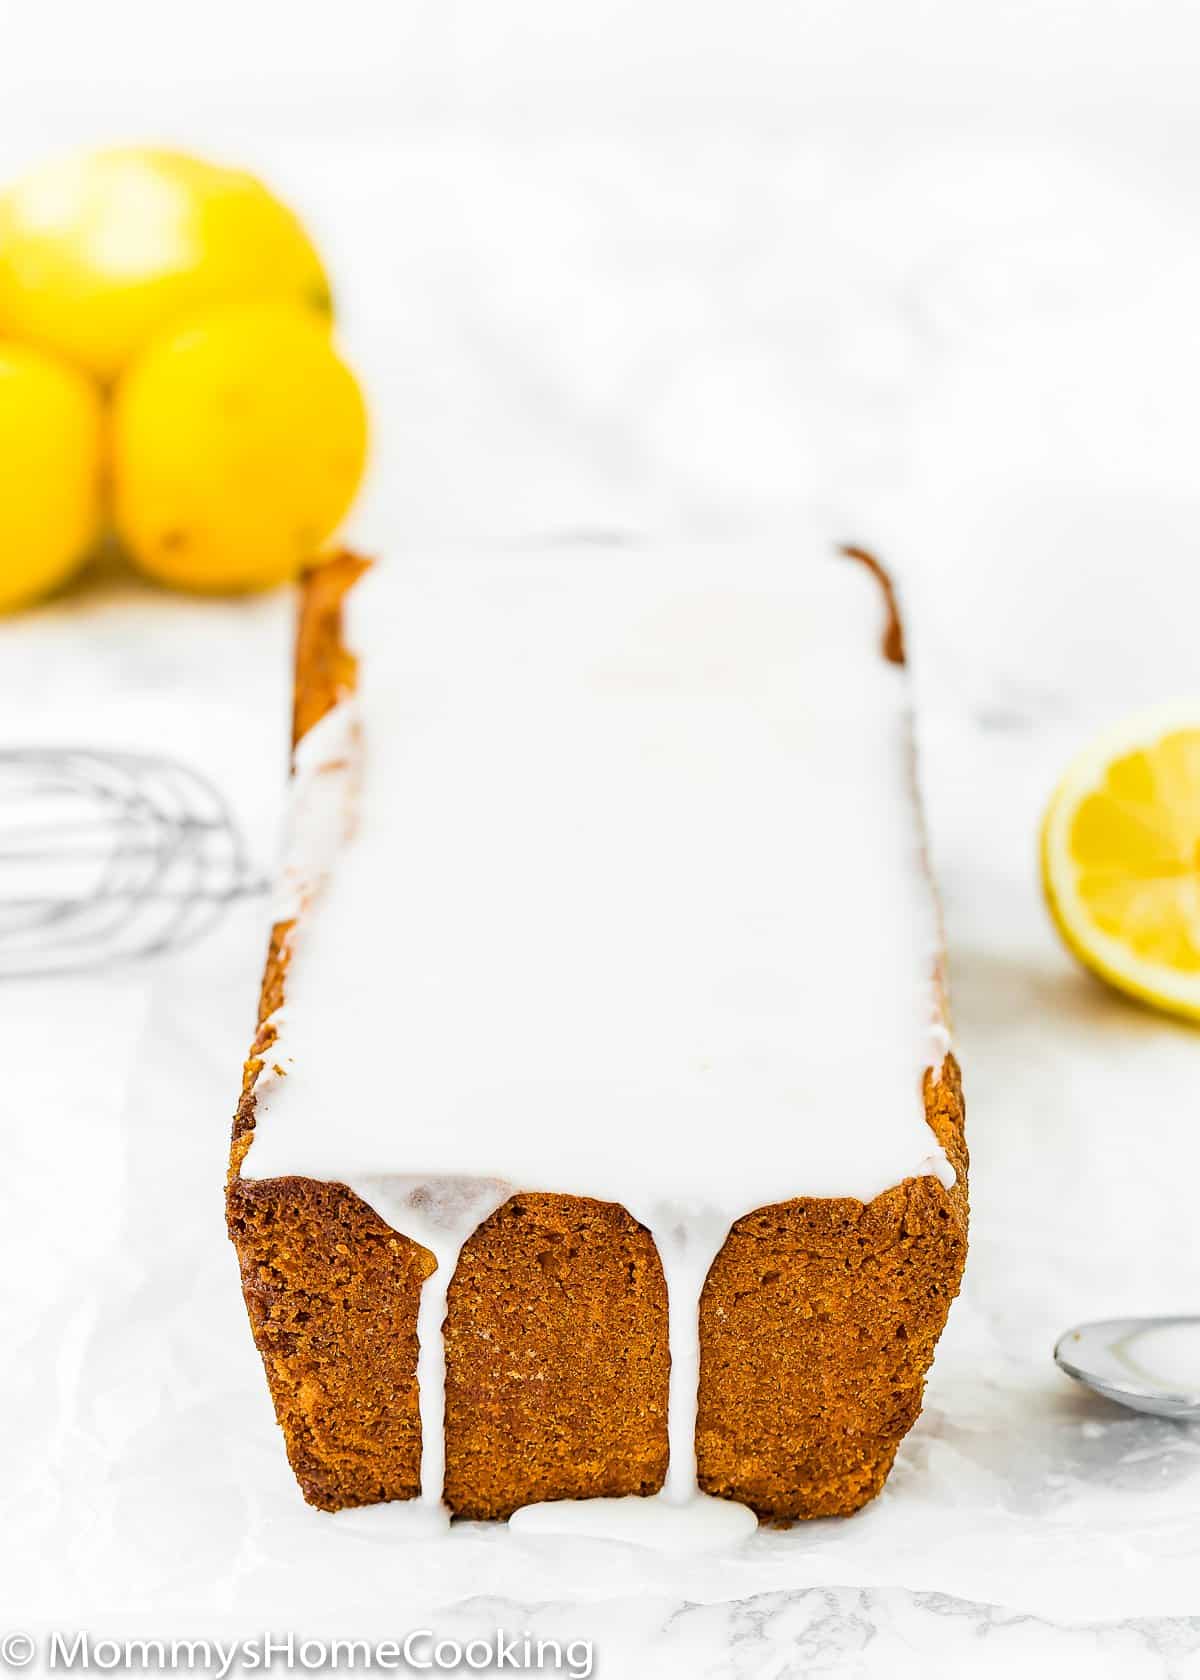 Eggless Lemon Pound Cake with glaze and fresh lemons on the background